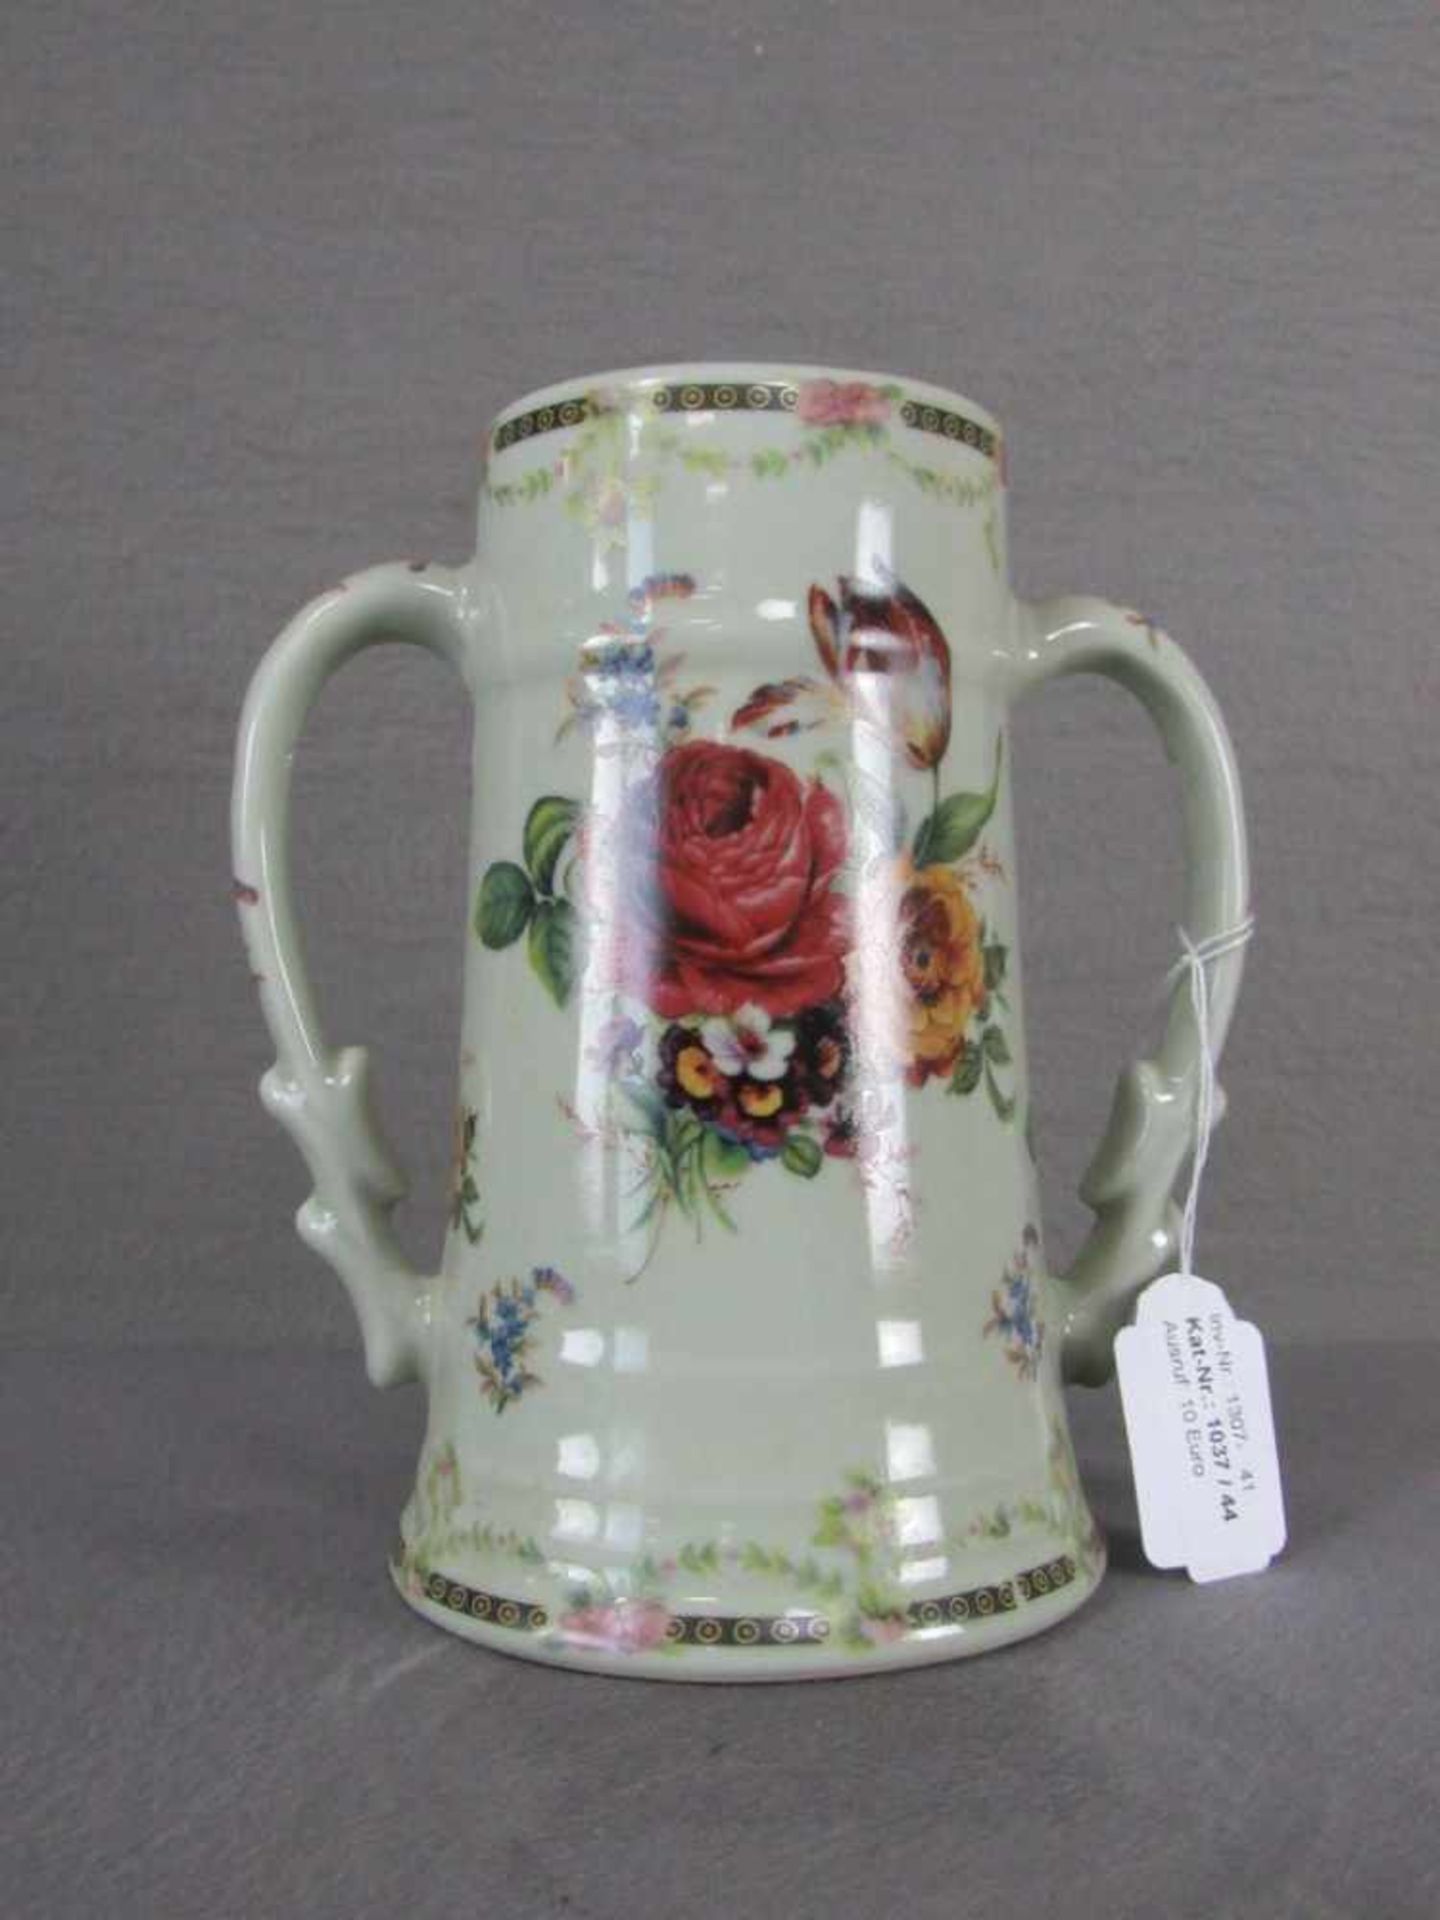 Henkelkrug floral 21cm hoch lasierte Keramik - Image 2 of 2